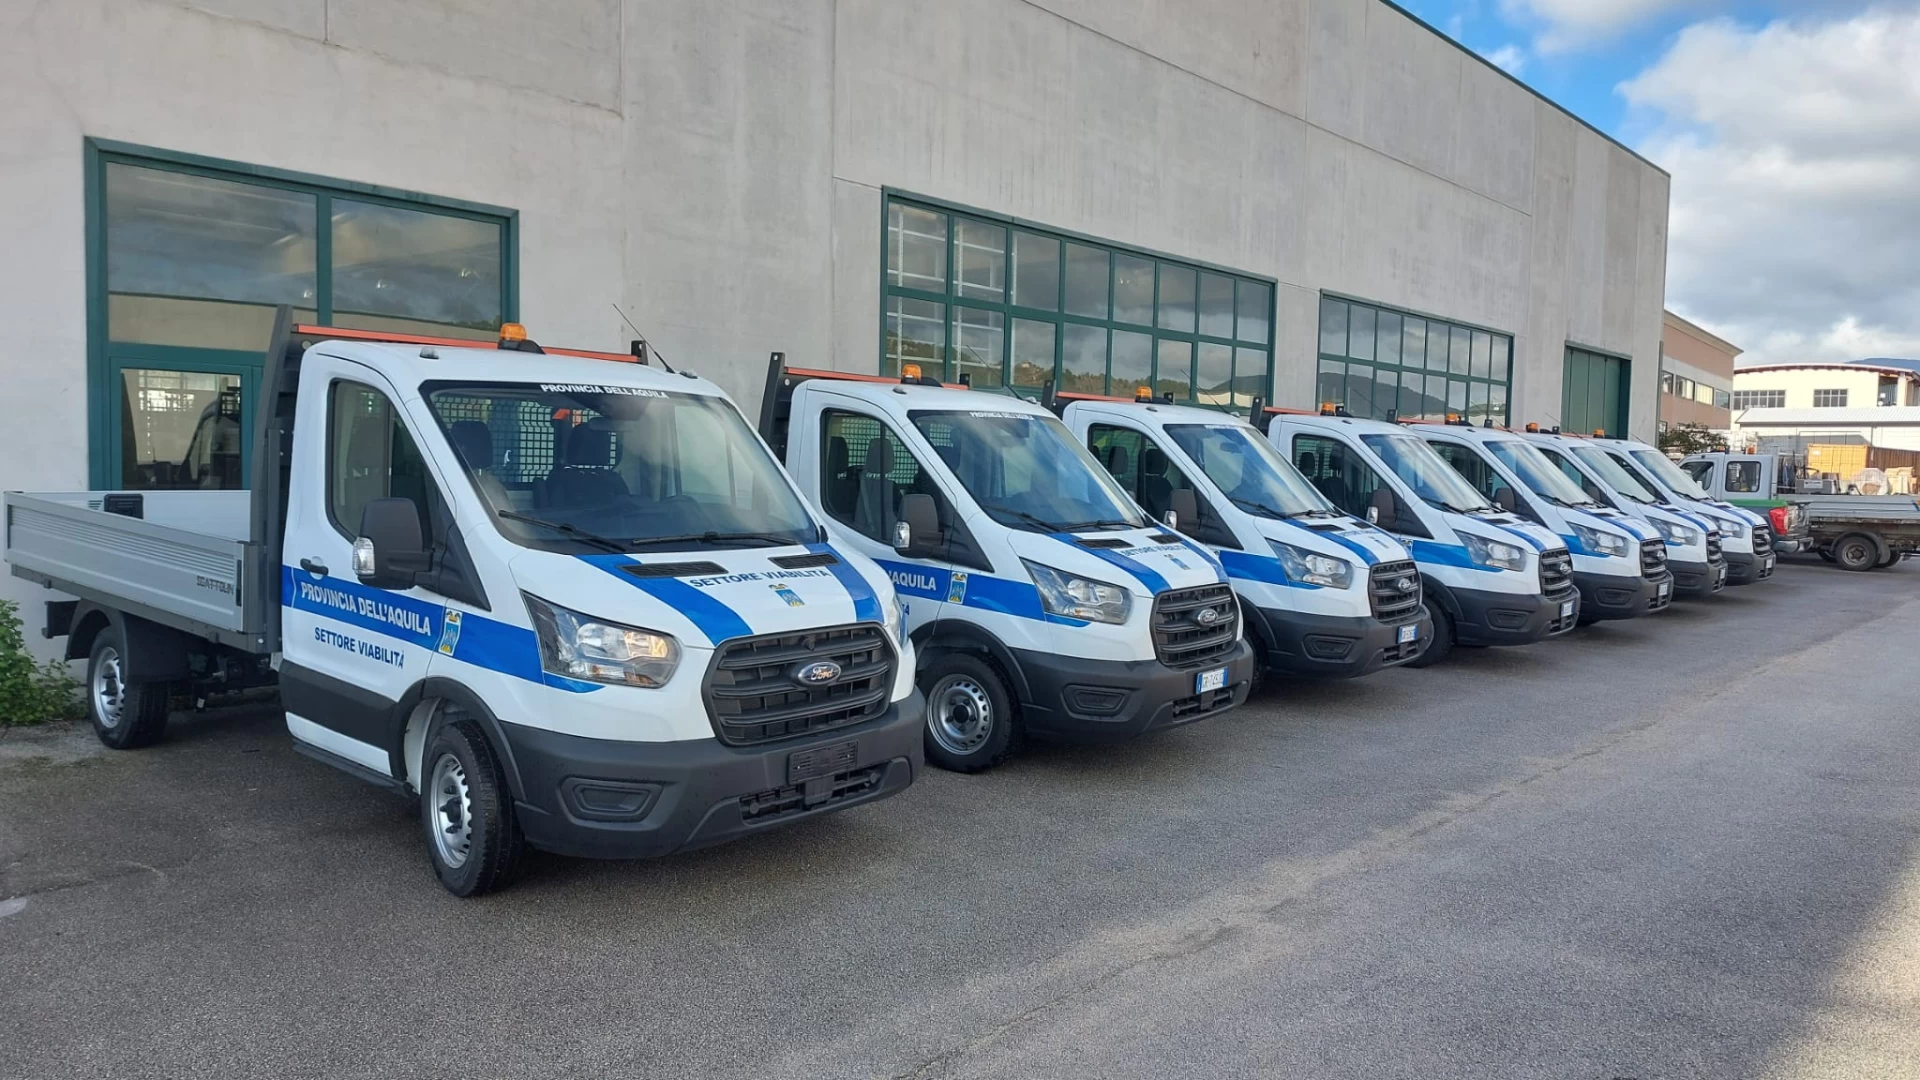 Provincia dell'Aquila , acquistati 18 nuovi furgoni destinati al settore viabilità.